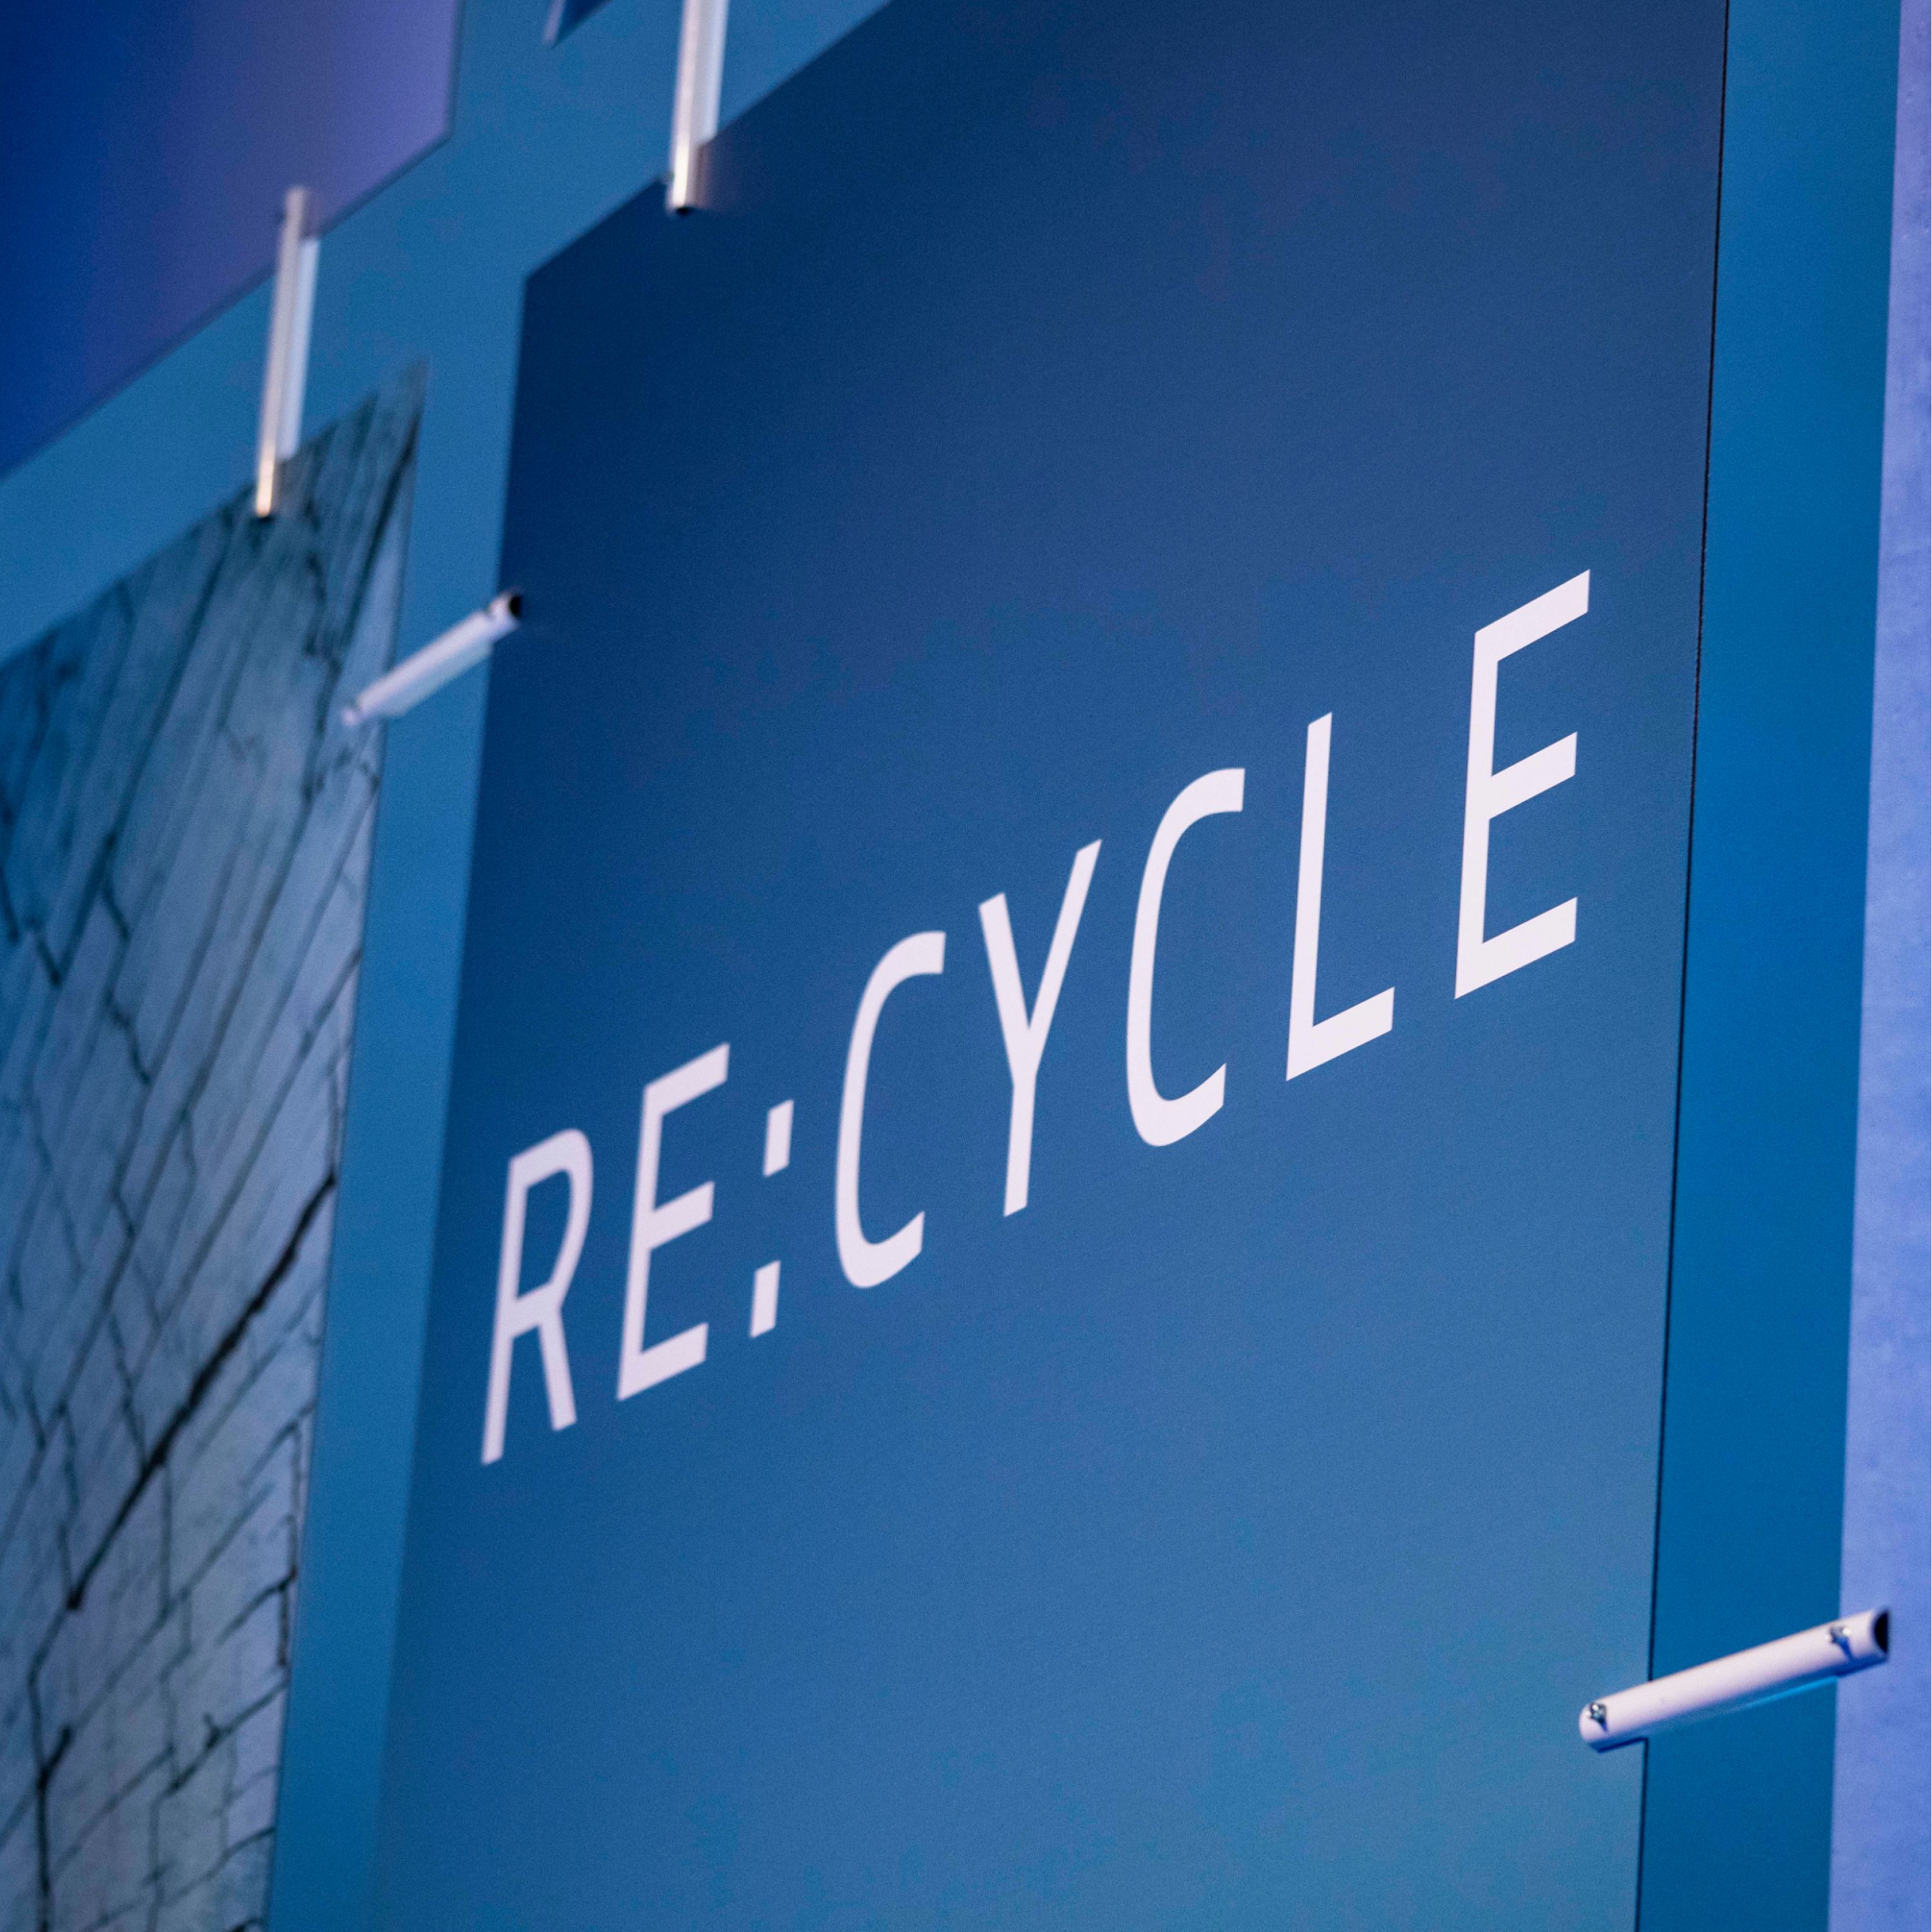 BMW Udržitelnost 2023 ekologická stopa vozu cirkulární ekonomika možnosti recyklace